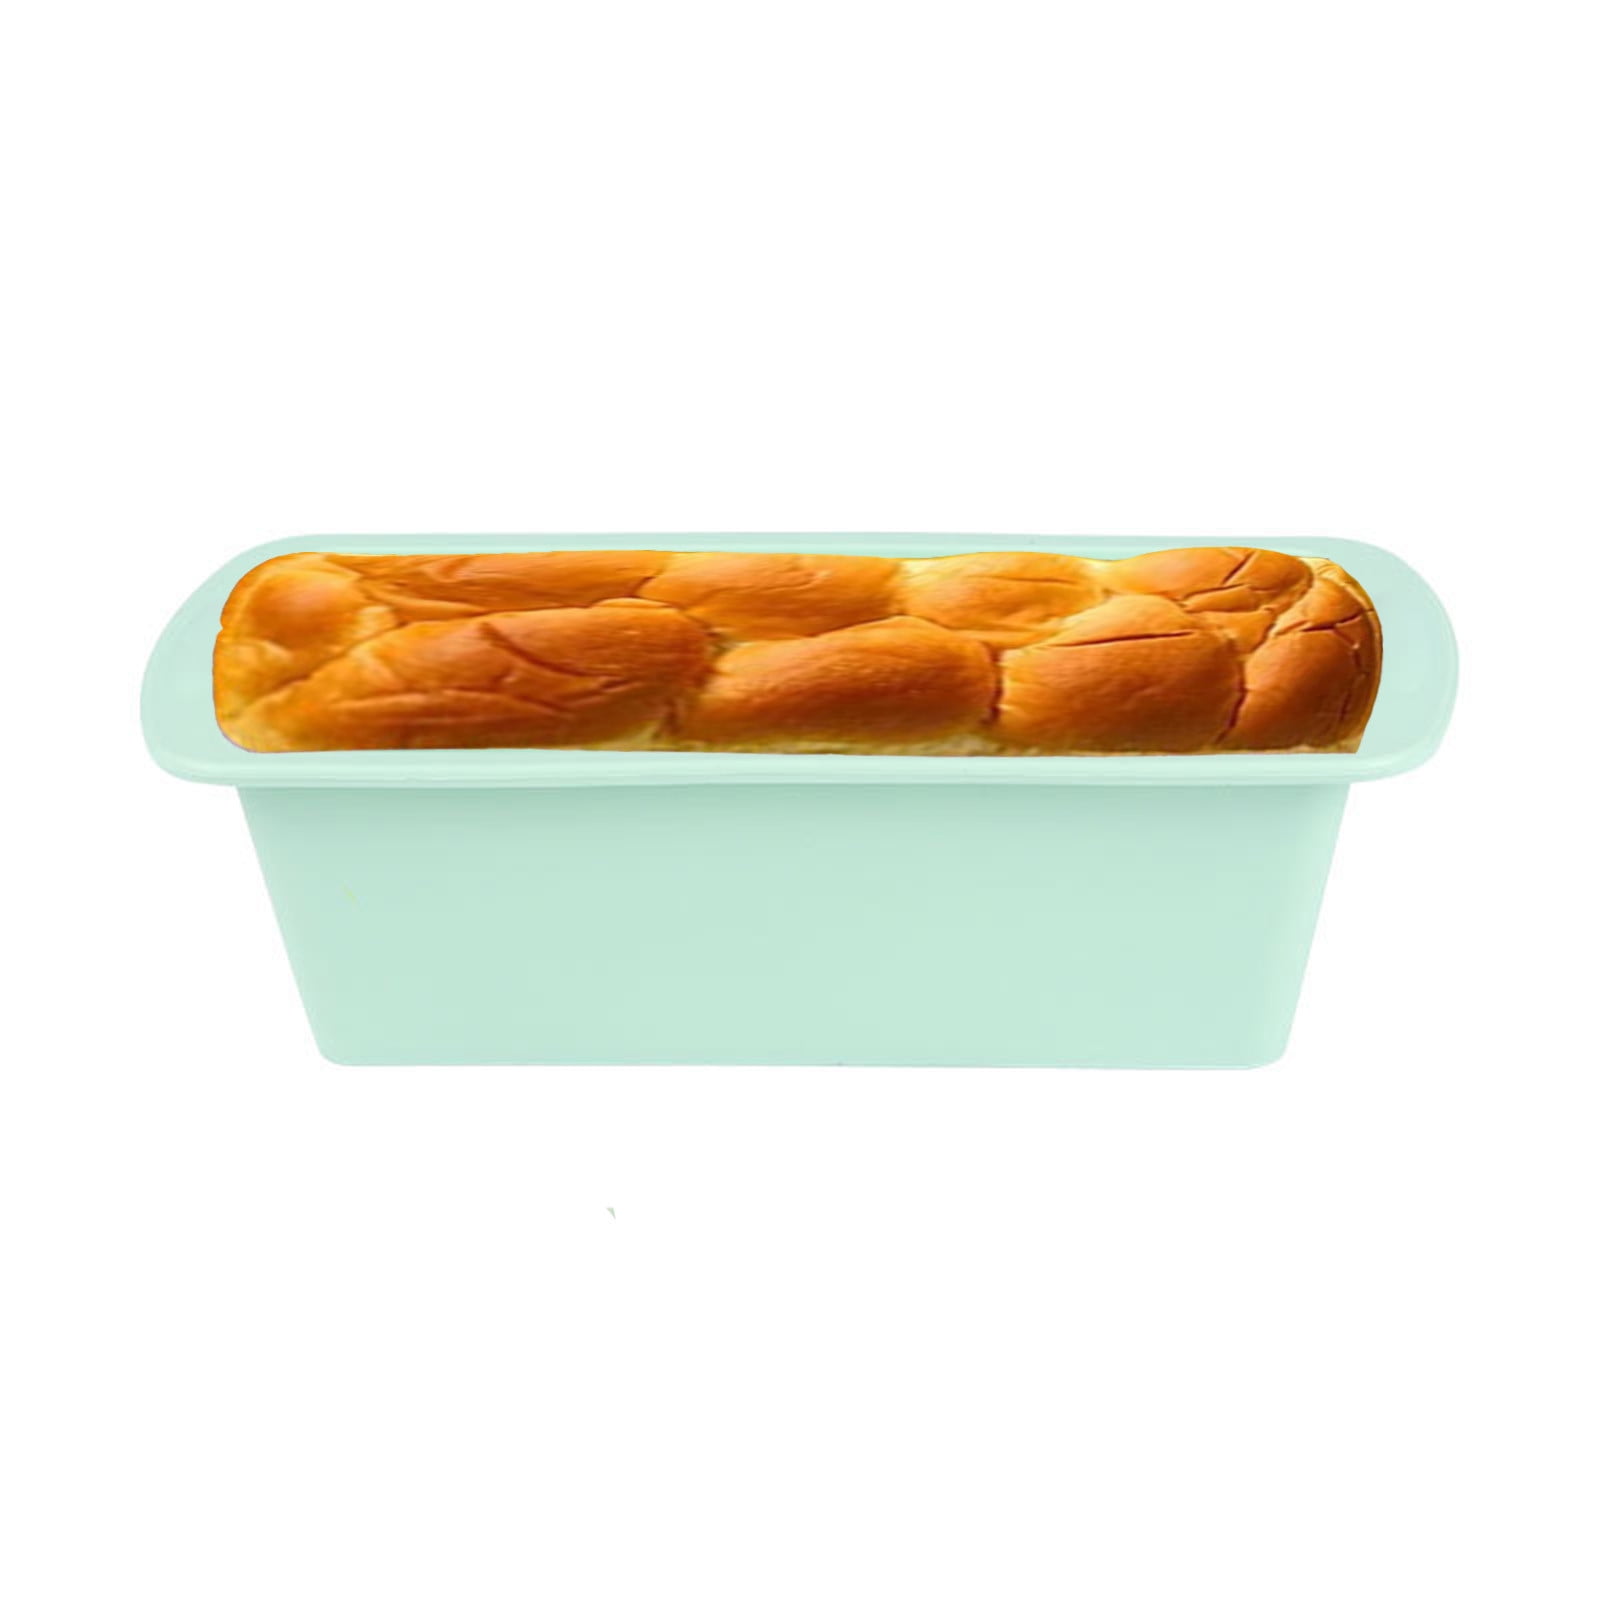 Wah TAH Trading Orange and Green Silicone Rectangular Cake/Loaf Pan Set (Set of 2)